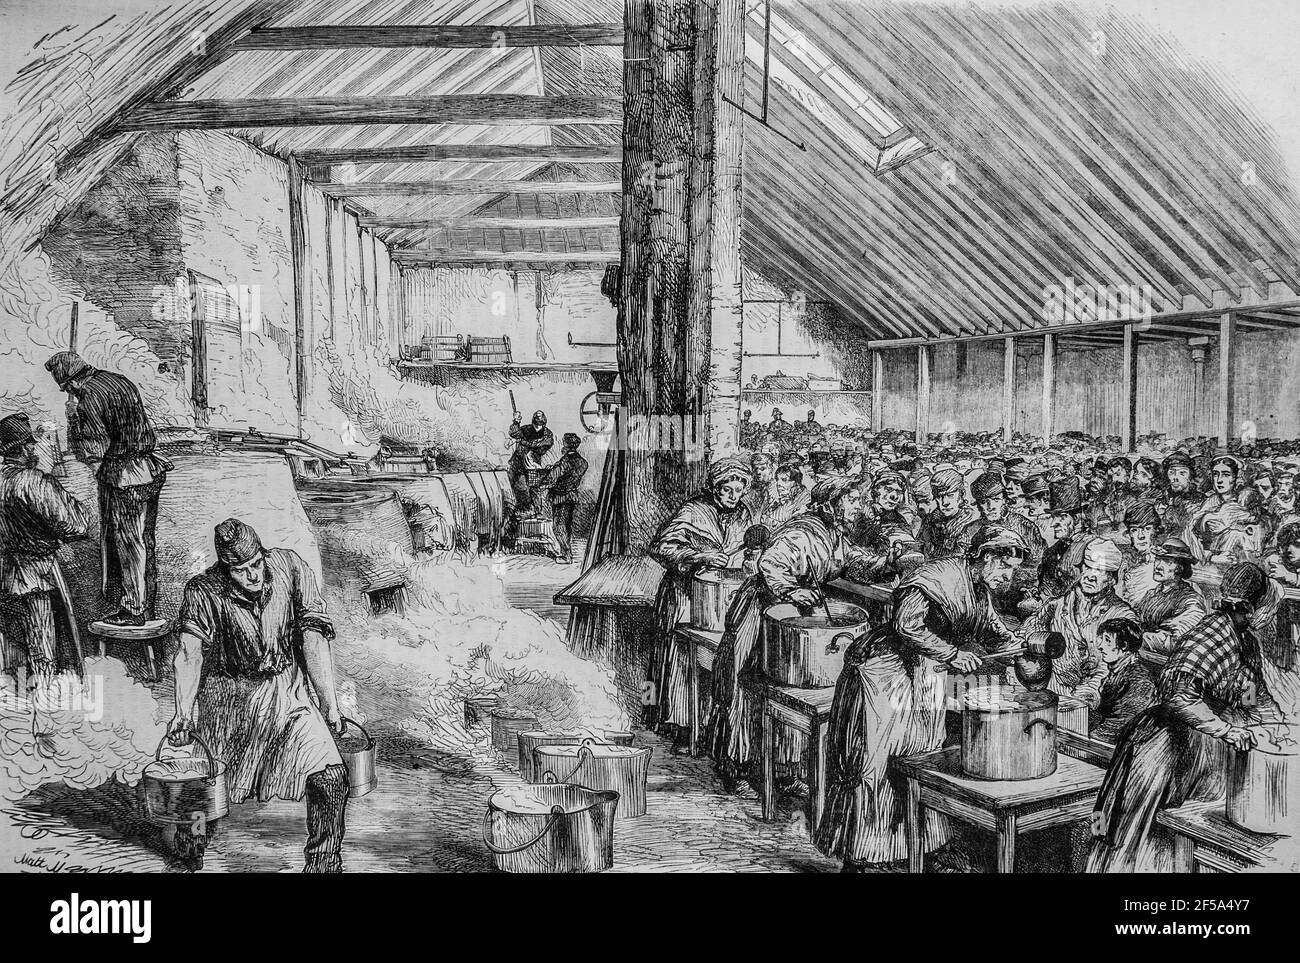 la misere a londres,distribution de nouritures dans le quartier de spitalefleds, l'univers illustre,editeur michel levy 1868 Foto Stock